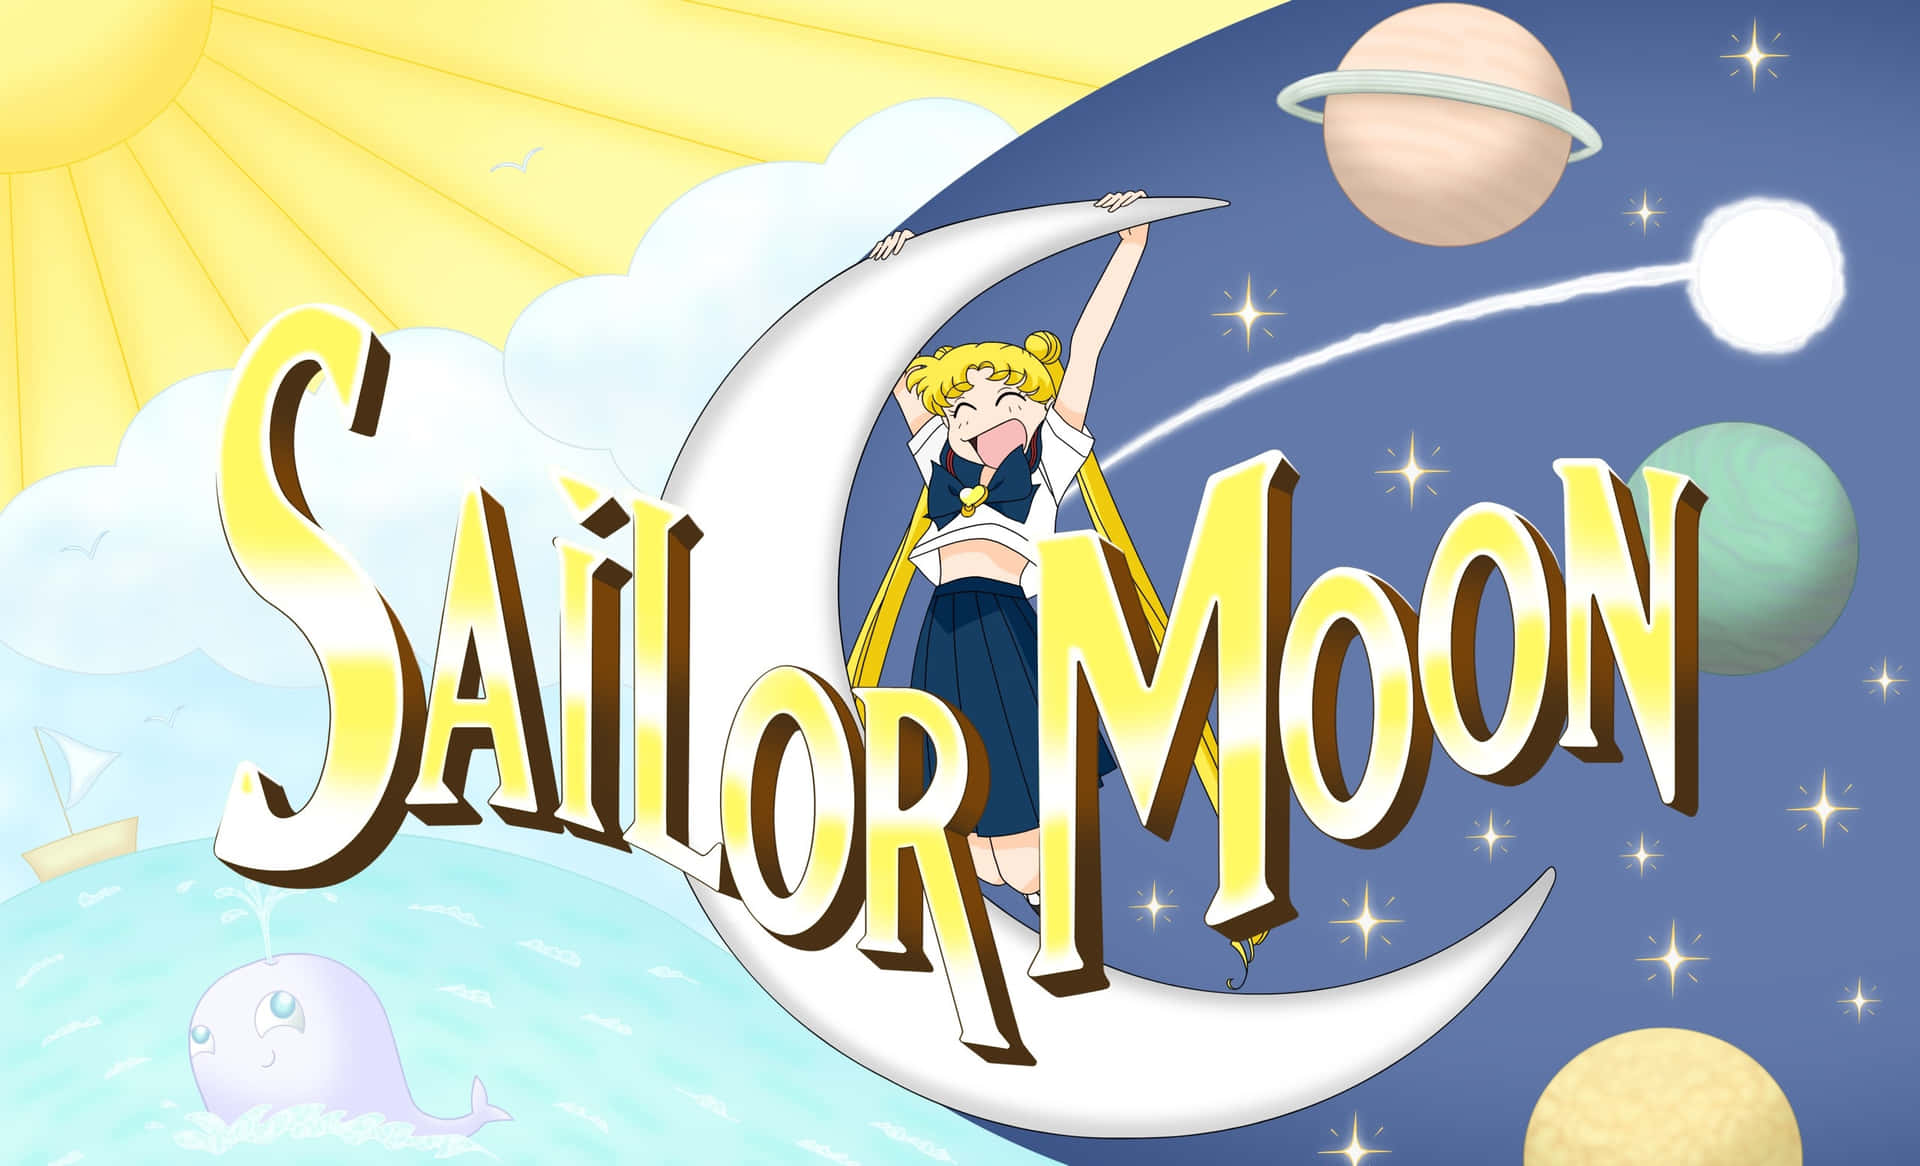 Sailormoon - Forsvarer Kærlighed Og Retfærdighed.